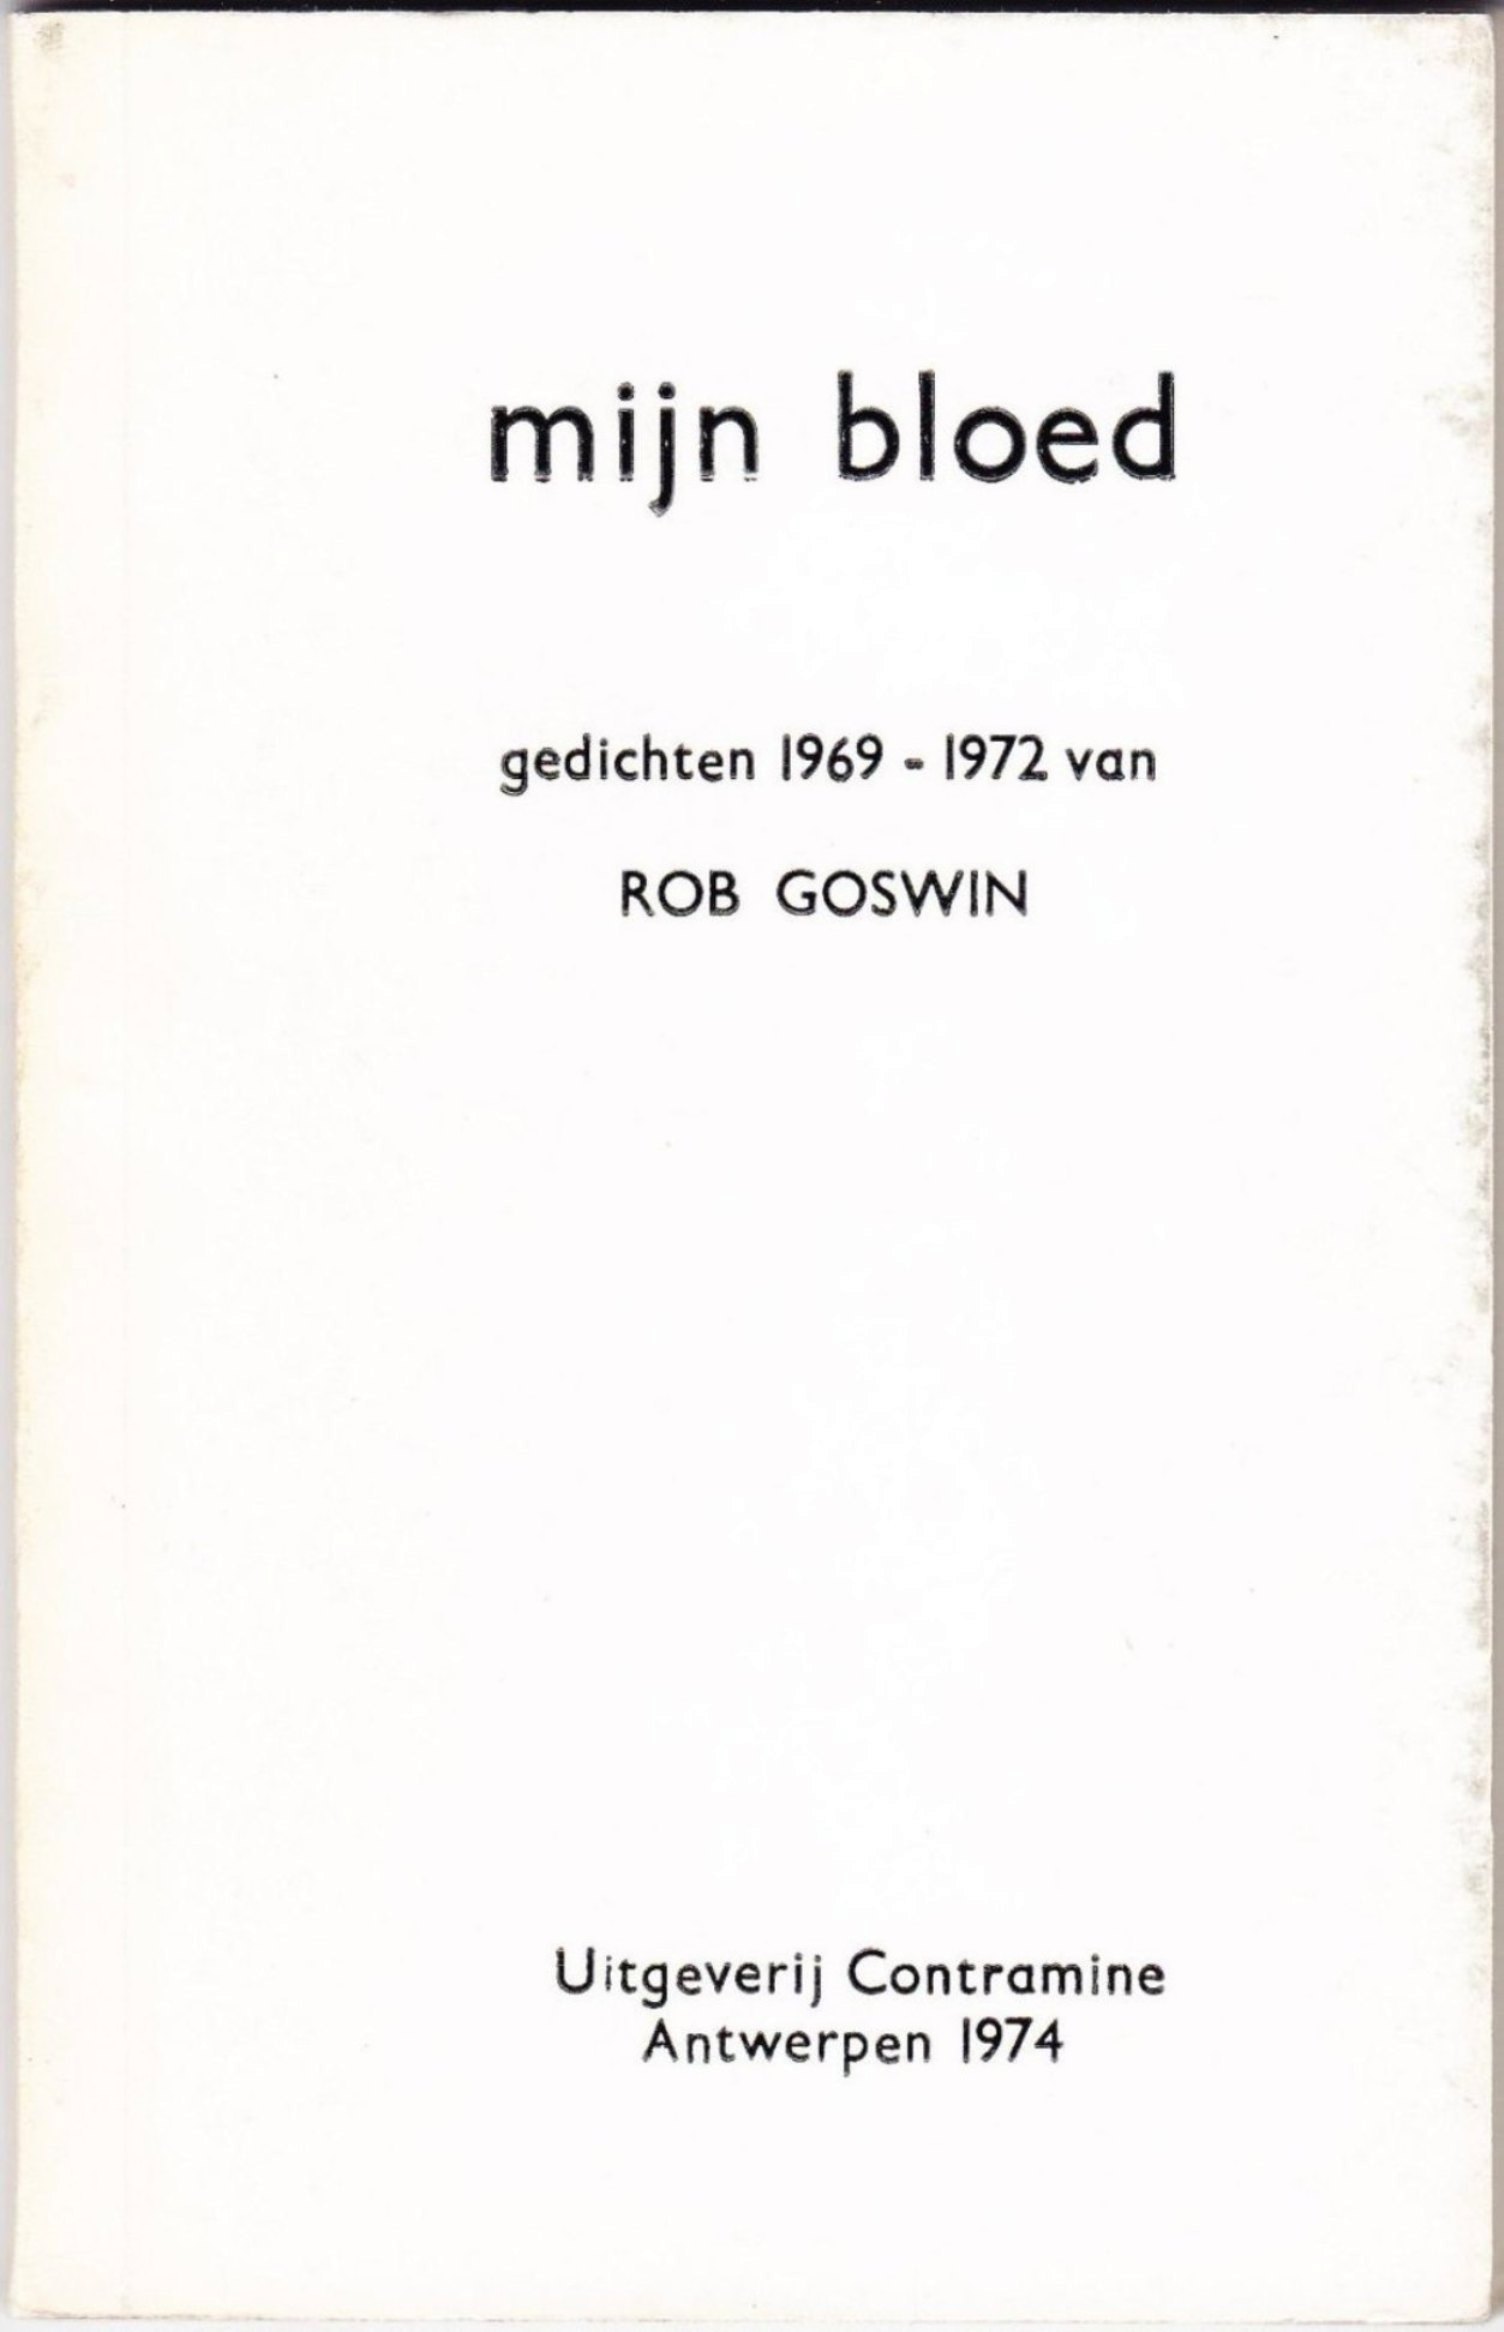 Hedendaags Goswin, Rob – Schrijversgewijs RI-68